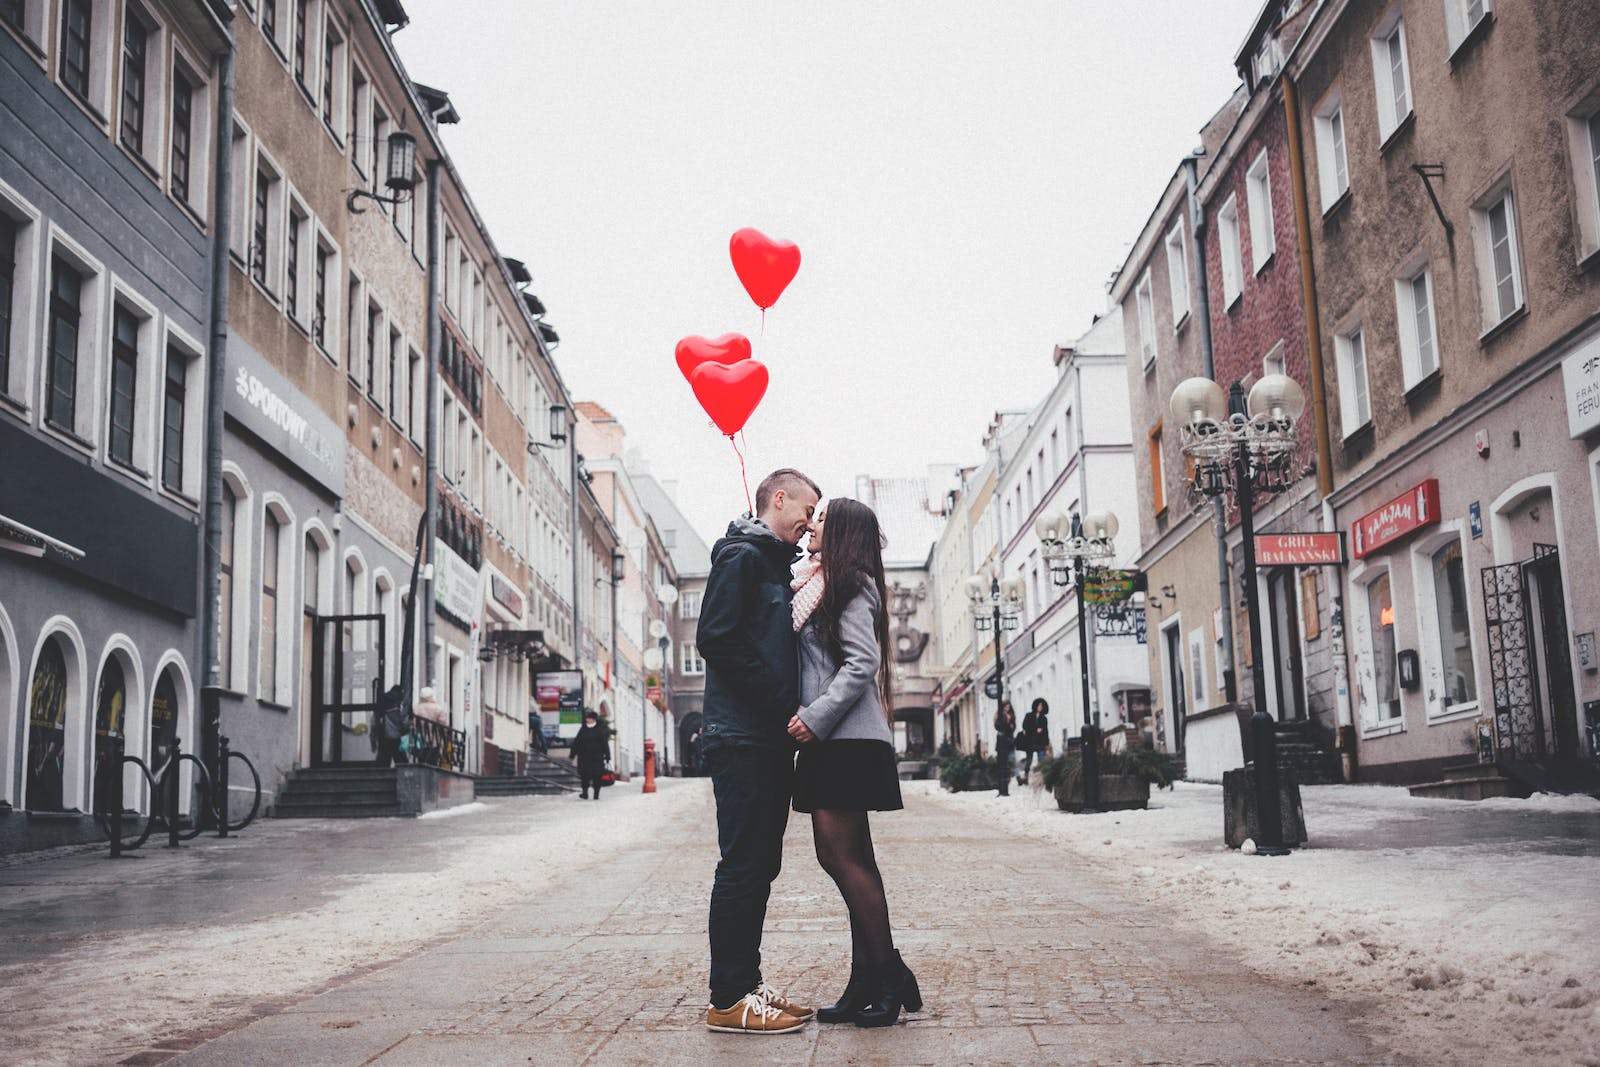 koppel geeft elkaar kus op straat terwijl ze hartjesballonnen vasthouden